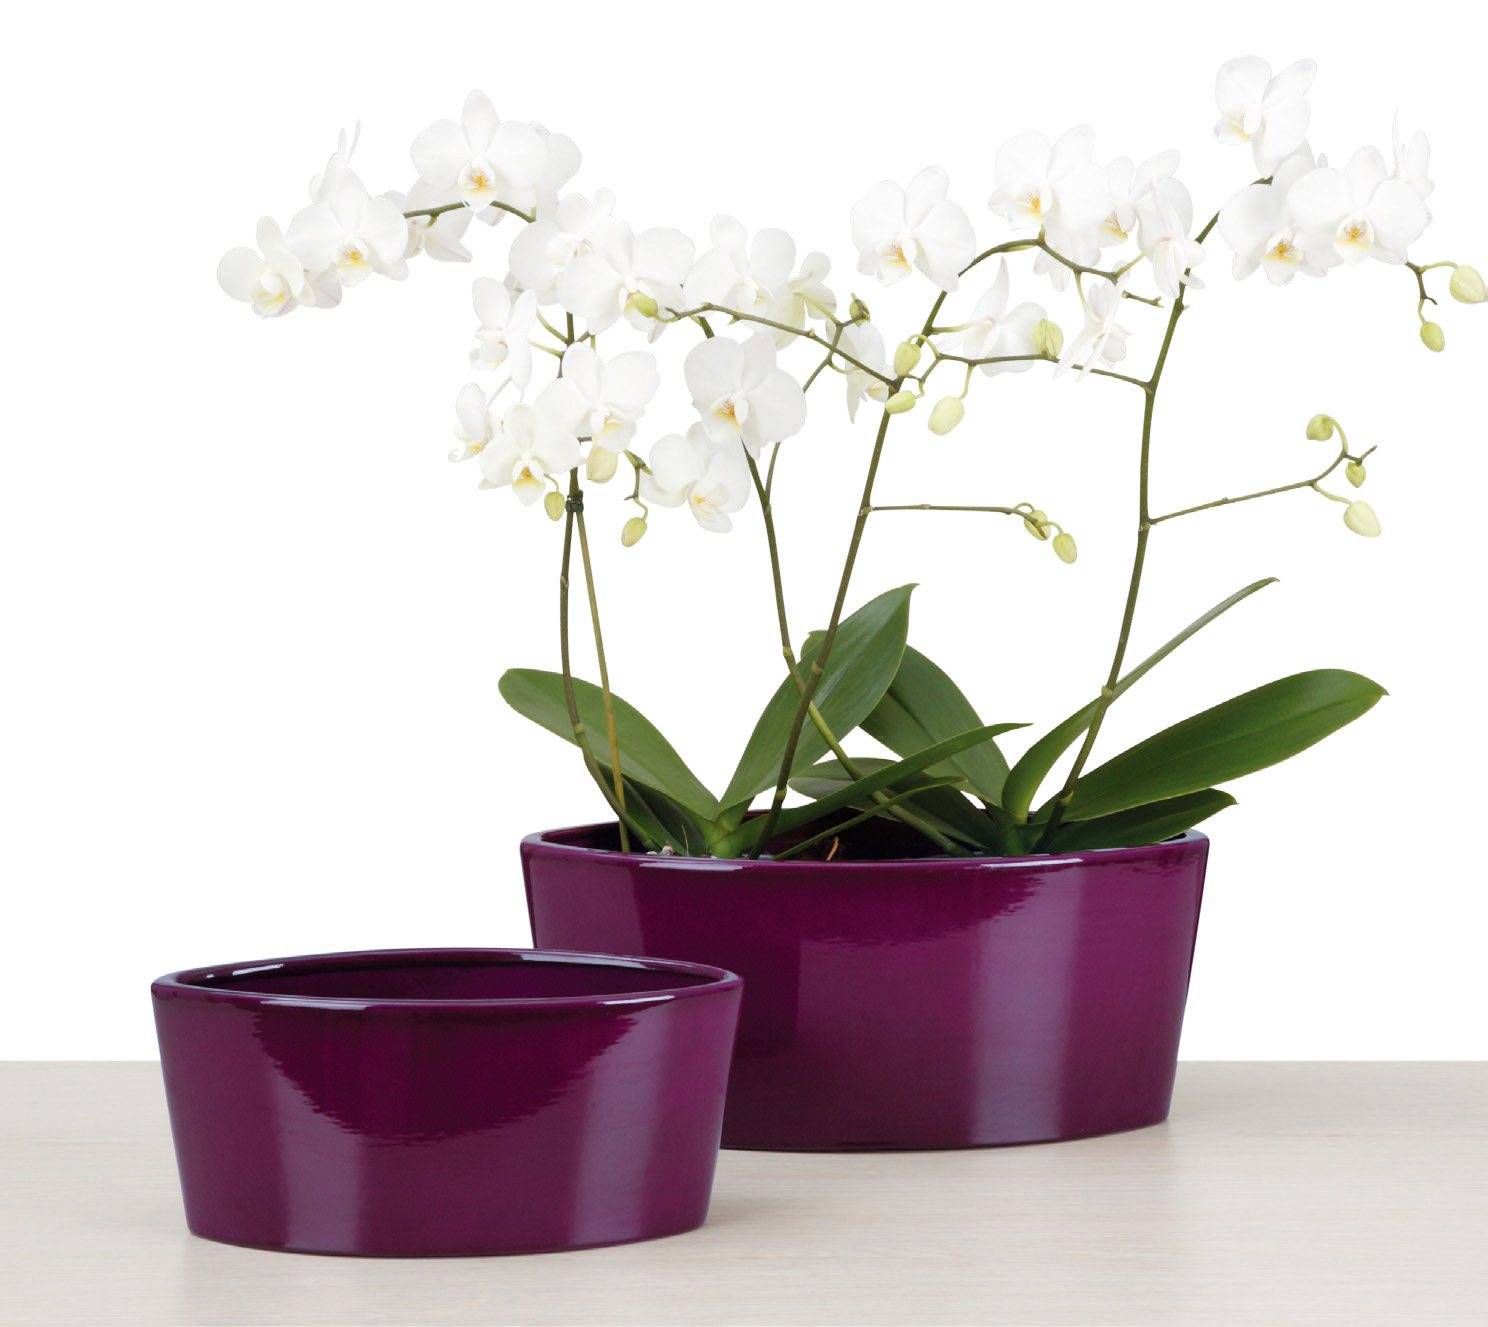 Горшок для орхидеи — какой лучше выбрать